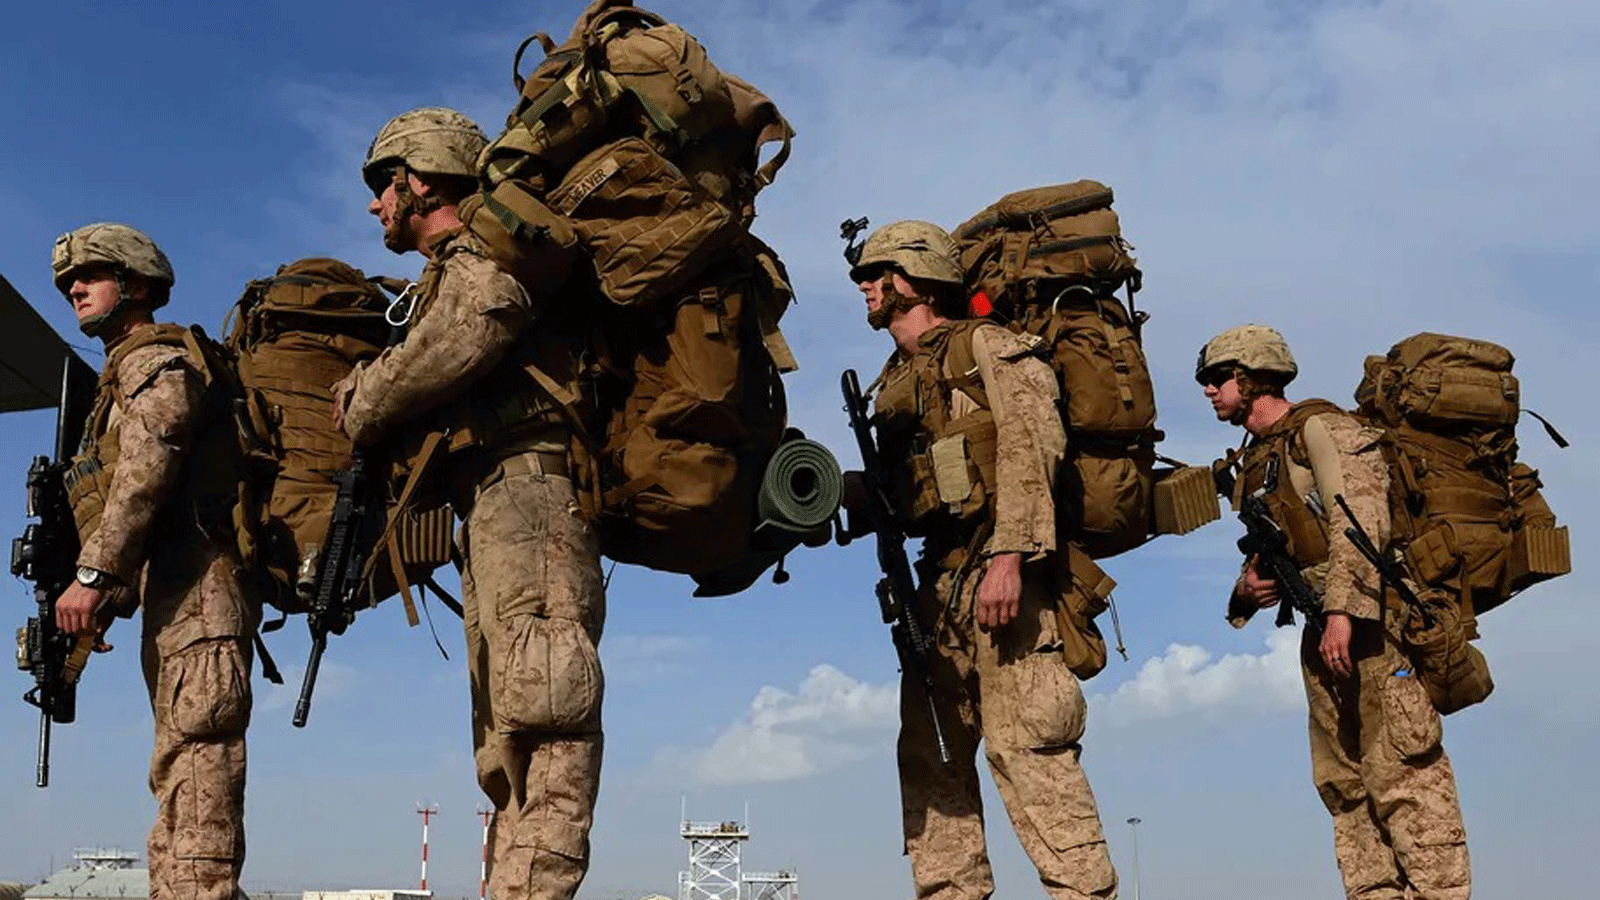 مشاة البحرية الأمريكية على متن طائرة نقل متجهة إلى قندهار/ أفغانستان، مع انسحاب القوات البريطانية والأميركية من مجمع في ولاية هلمند في عام 2014.